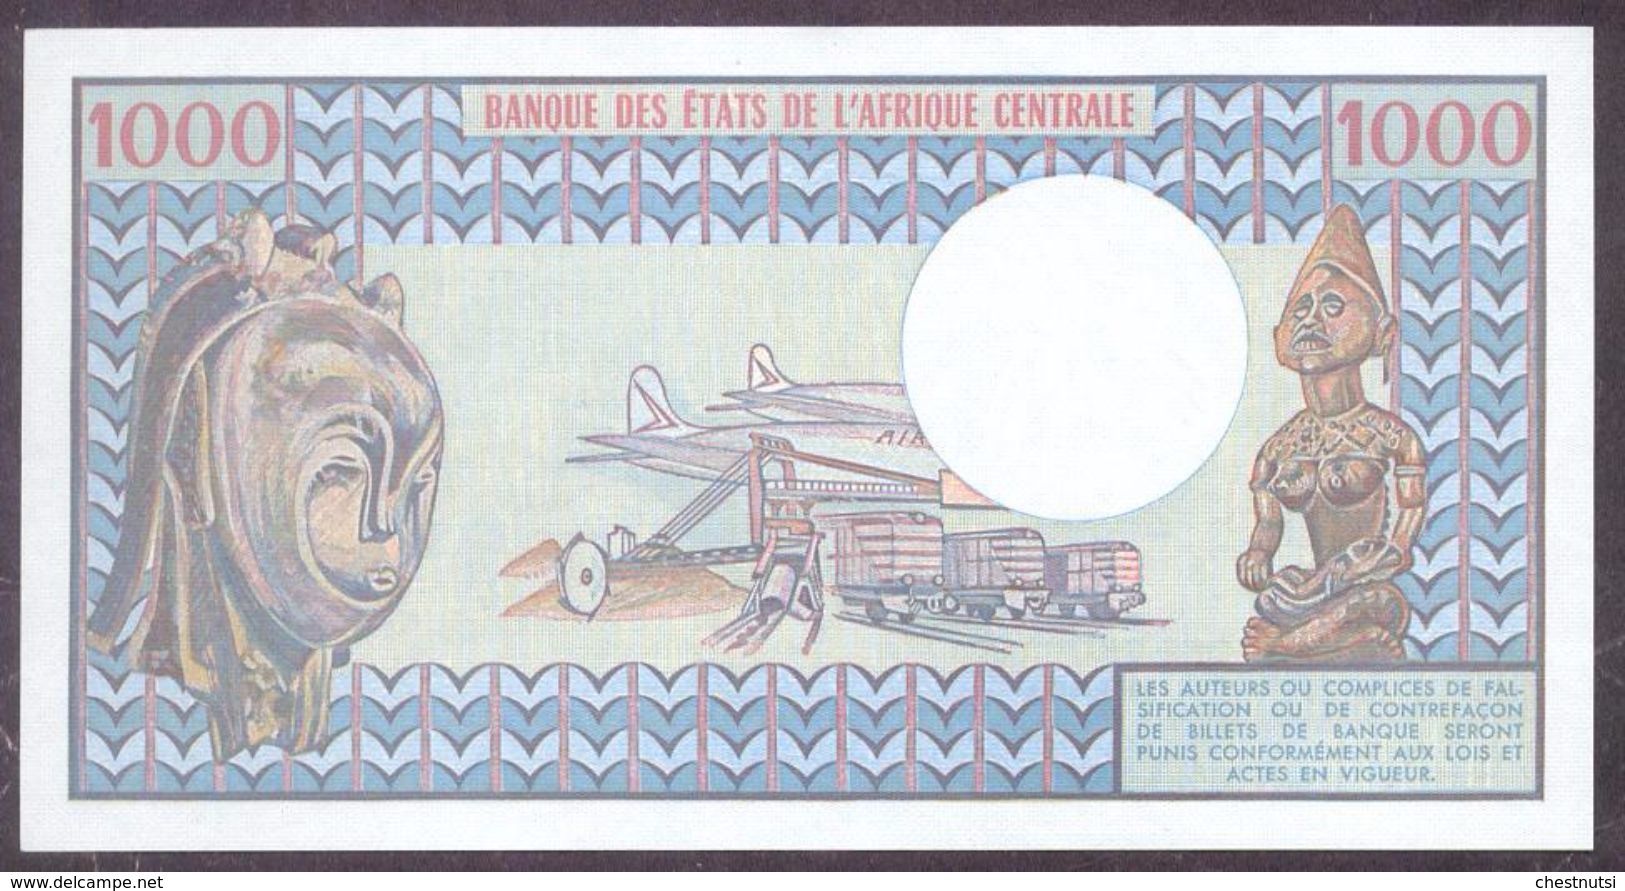 Cameroun 1000 Francs 1978 P16c Crisp UNC - Cameroon